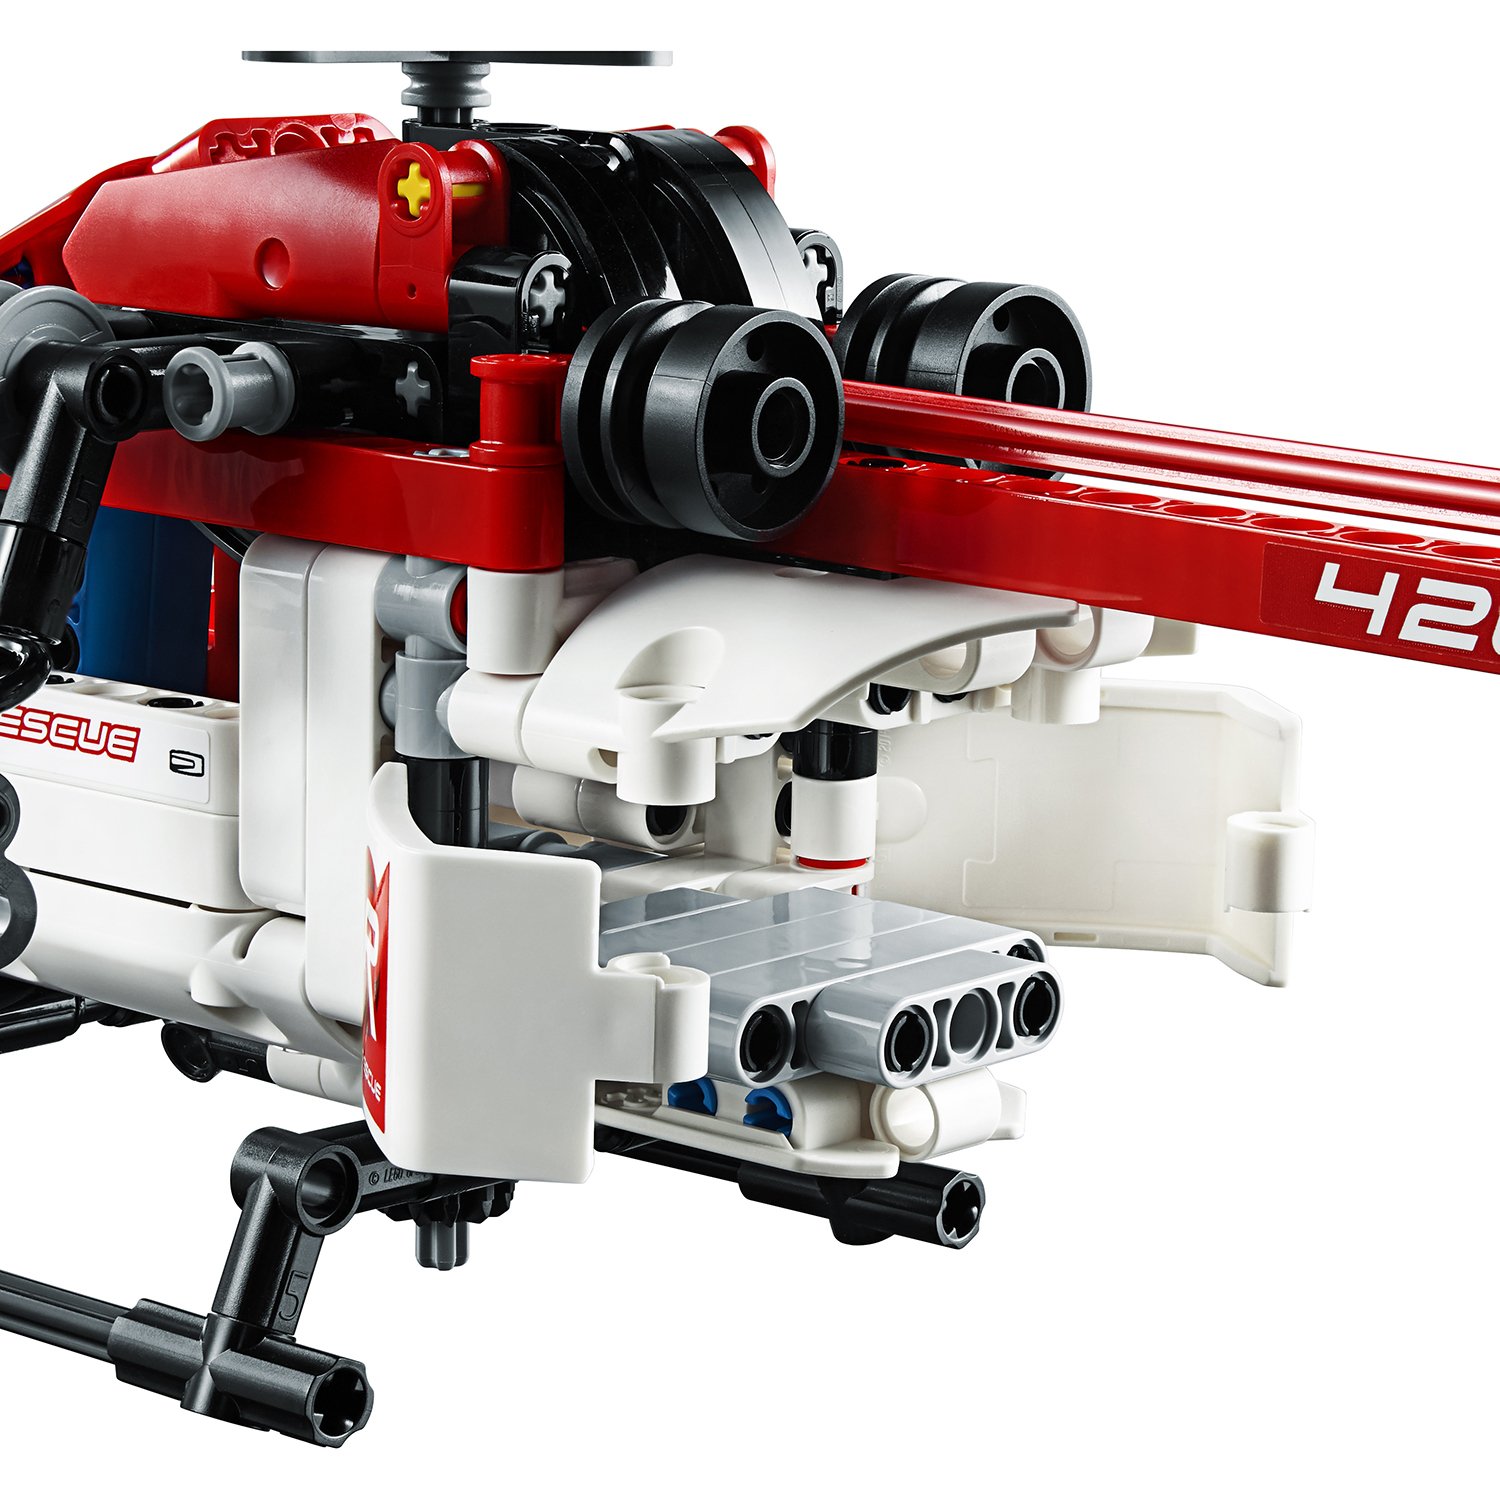 Lego Technic 42092 Спасательный вертолёт